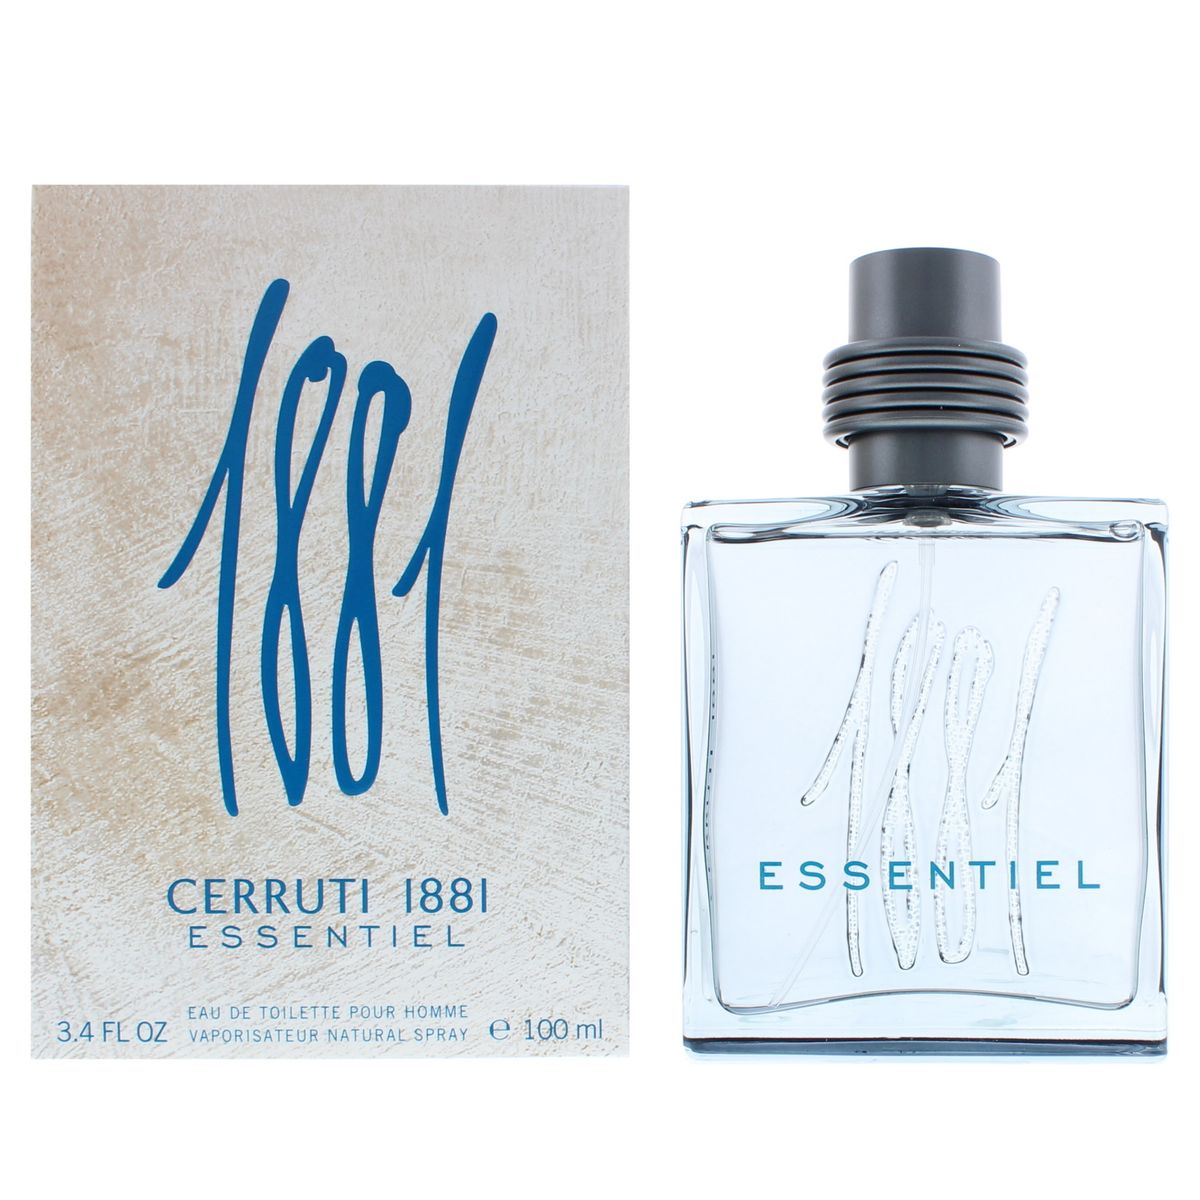 Cerruti 1881 Essentiel Eau De Toilette 100ml (Parallel Import) | Buy ...